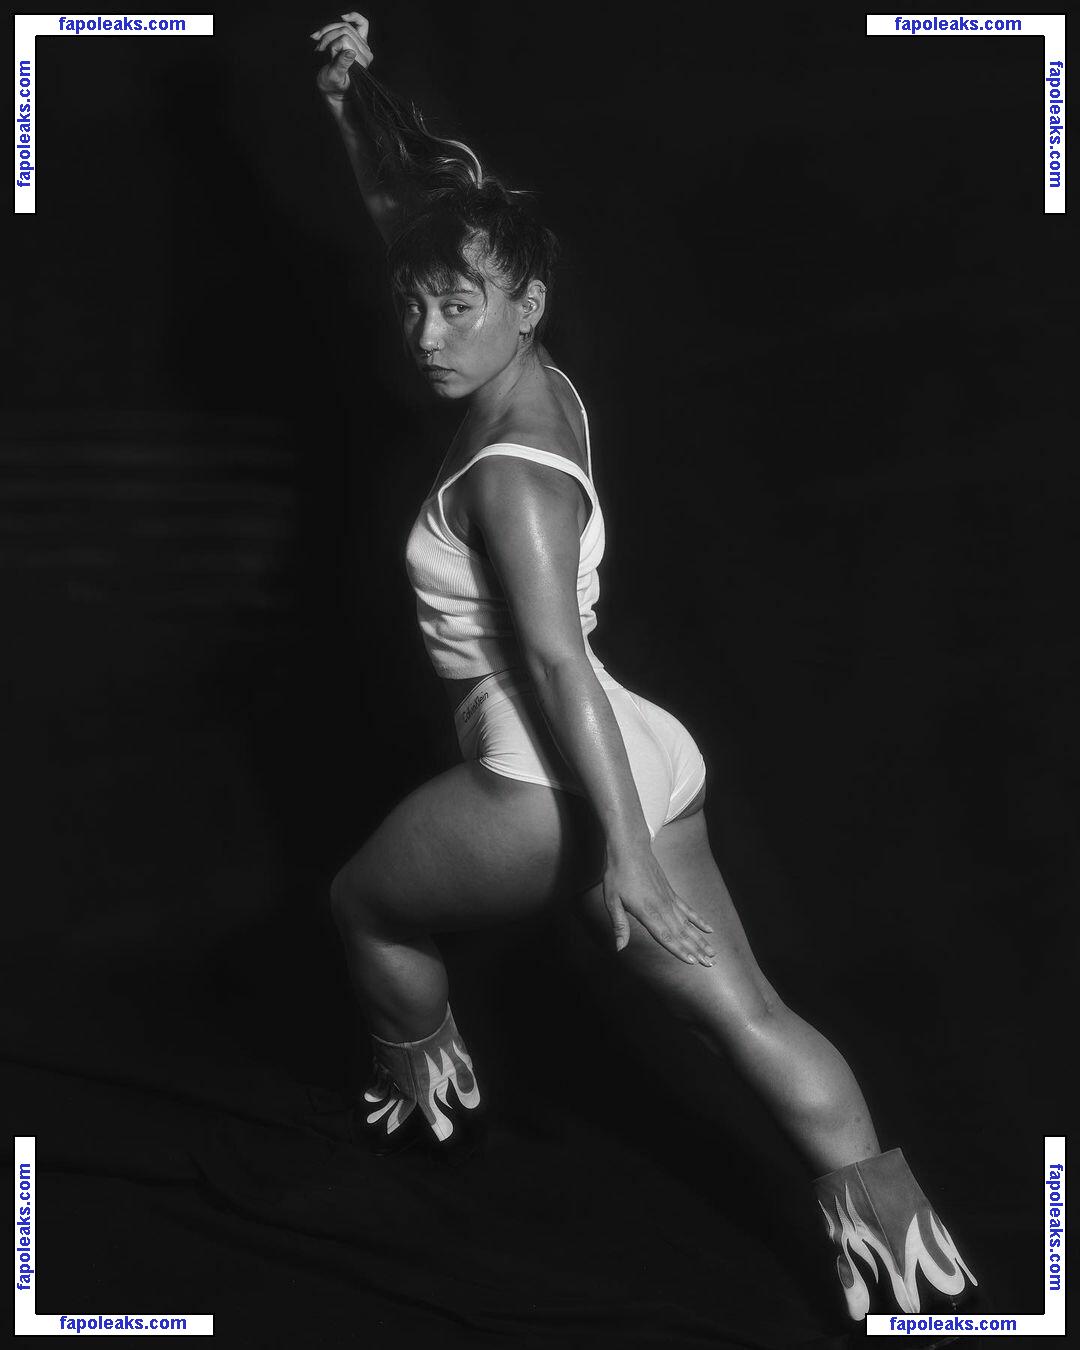 Katelyn Ohashi / katelyn_ohashi nude photo #0041 from OnlyFans